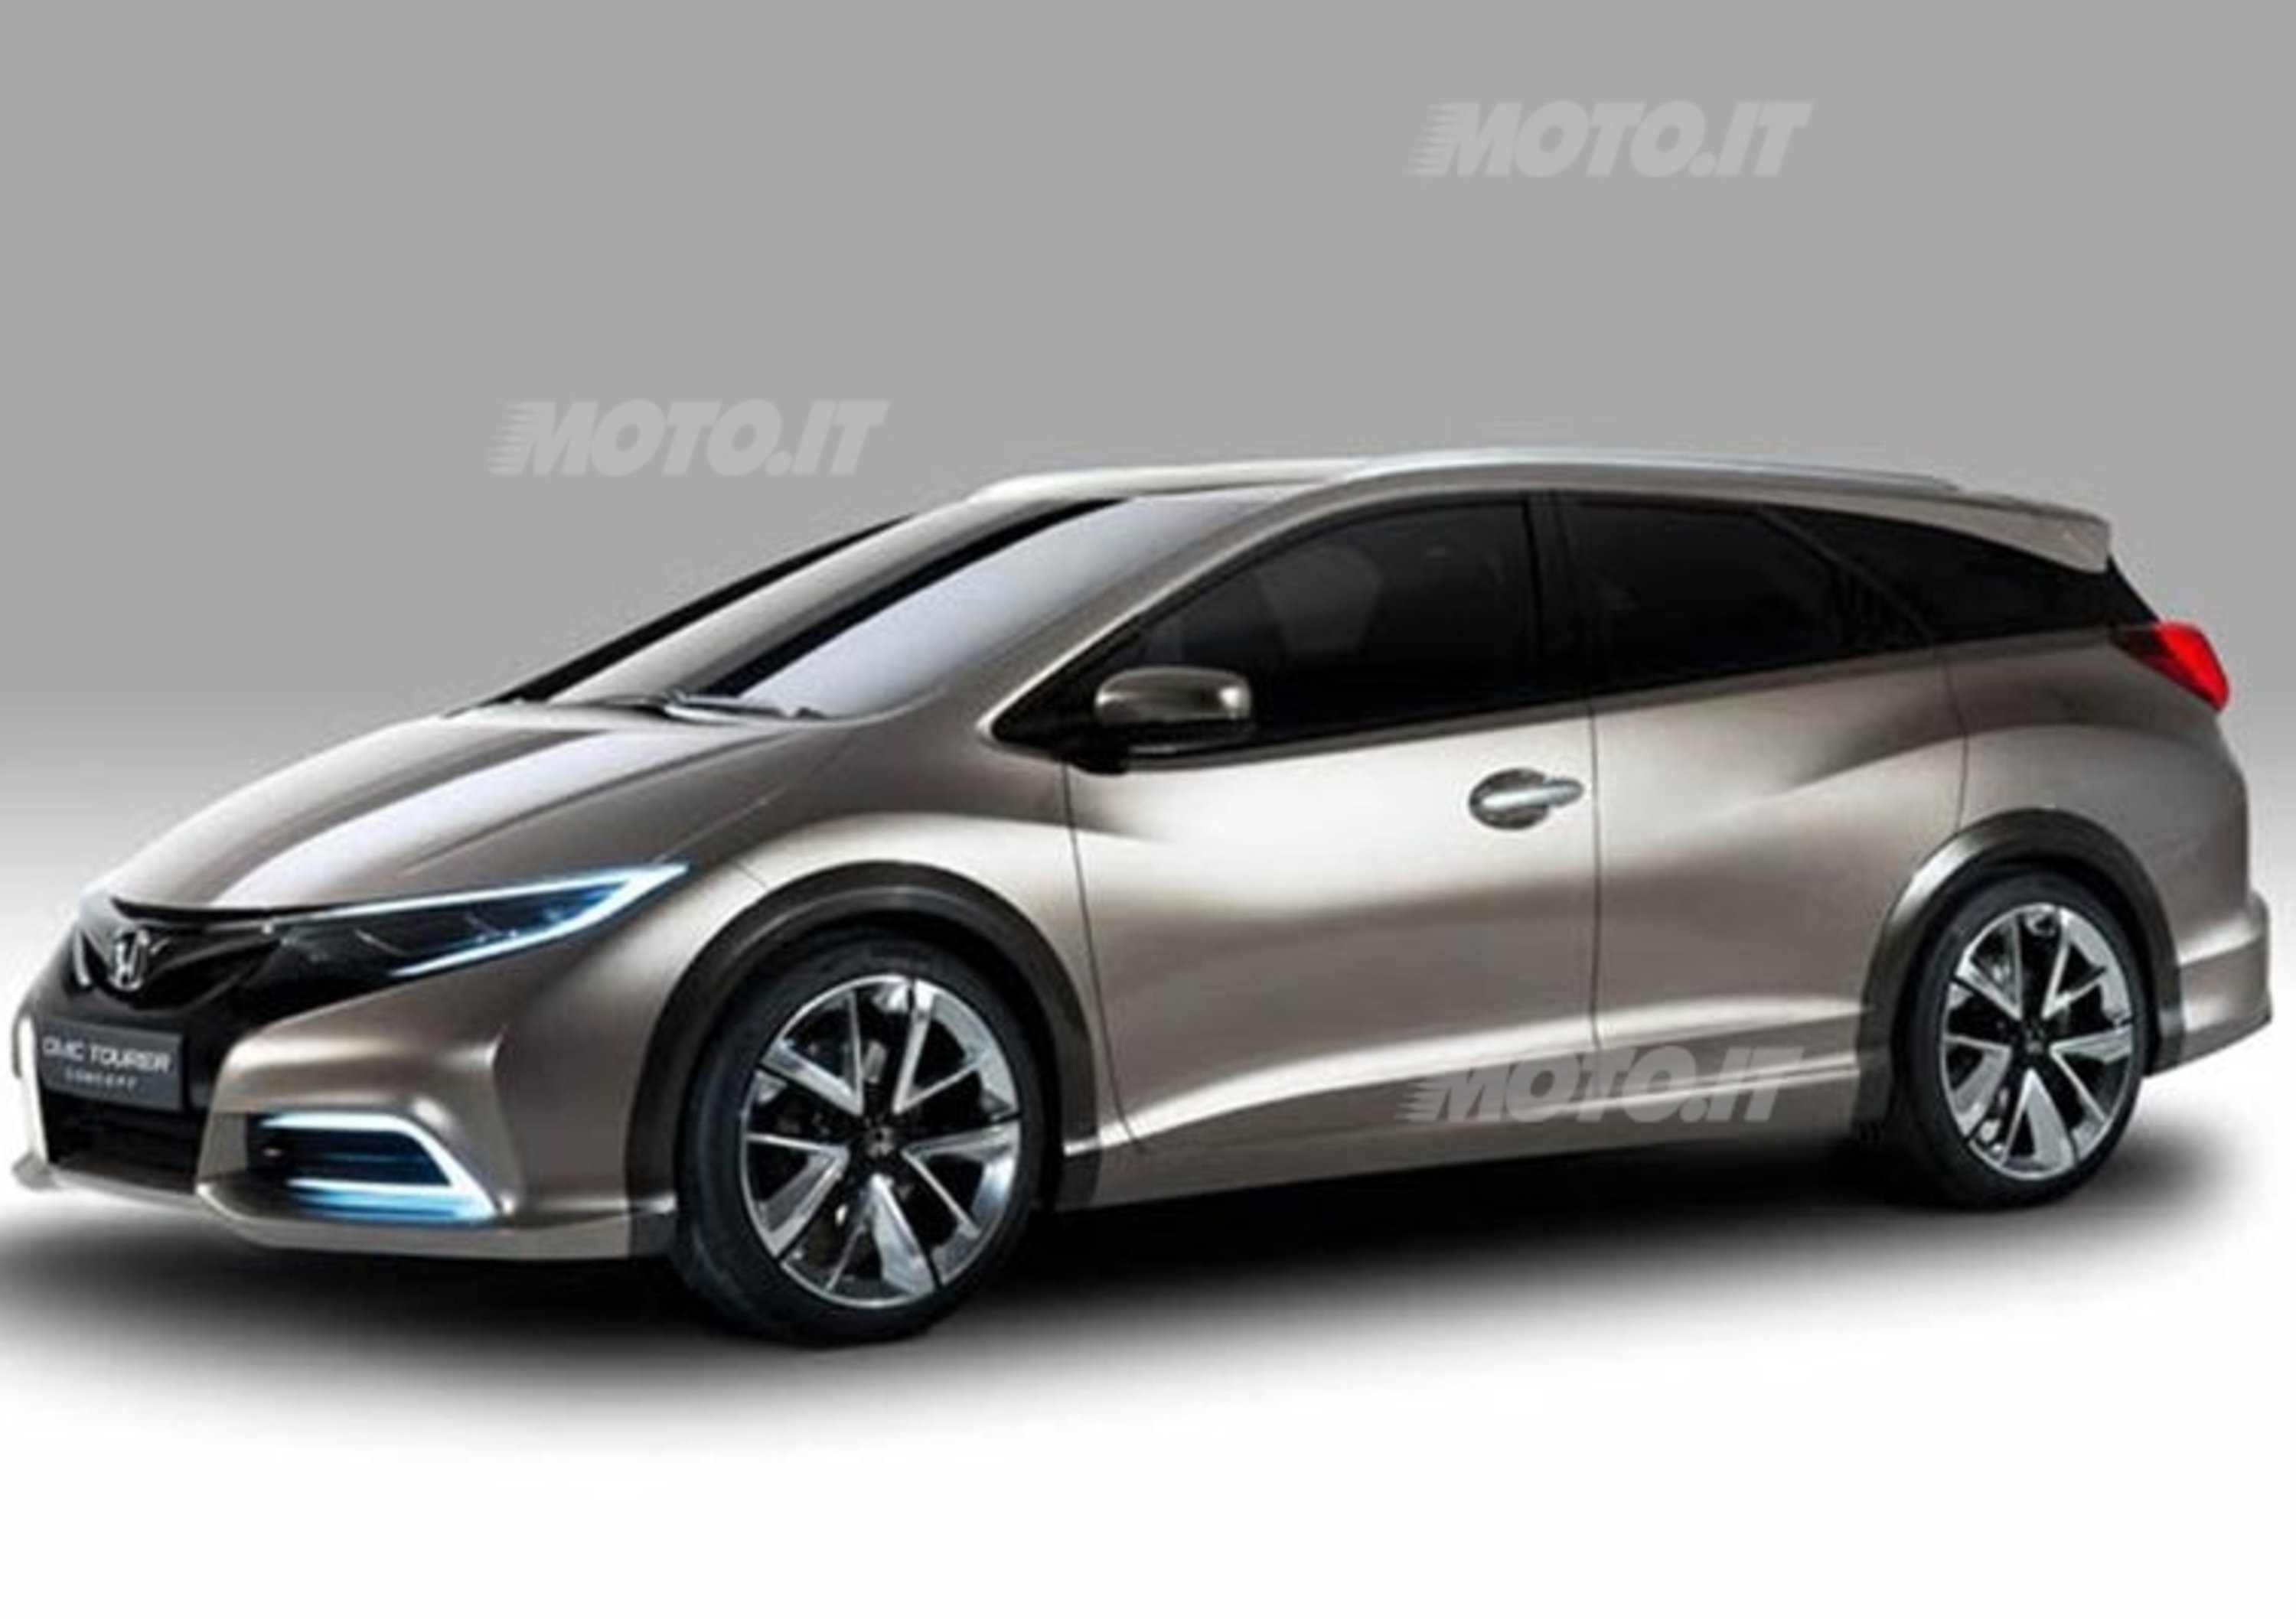 Honda Civic Tourer concept